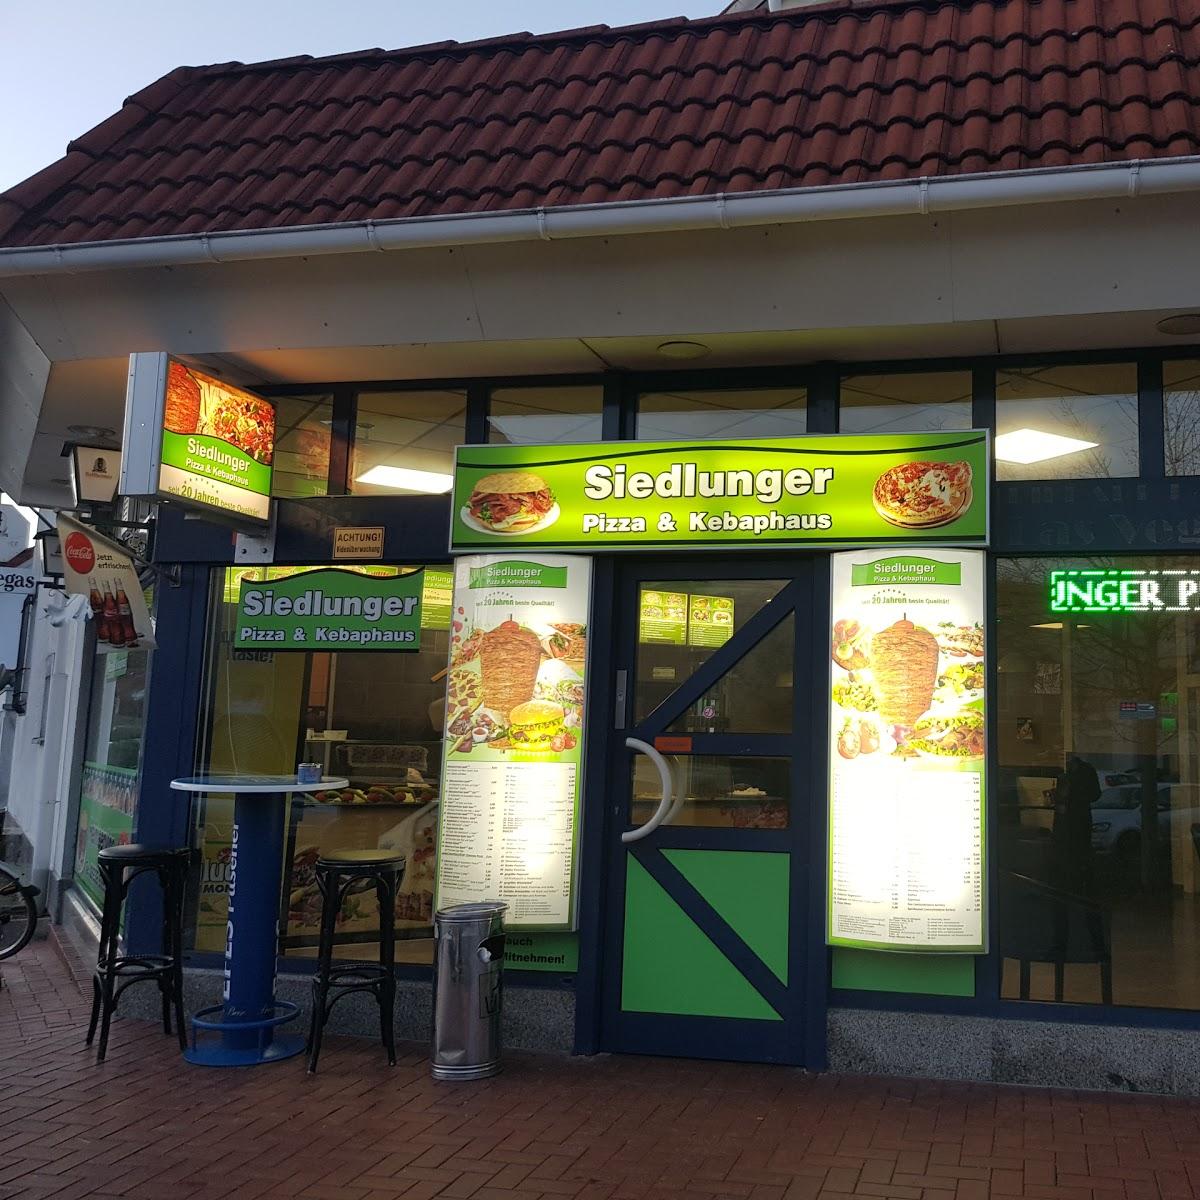 Restaurant "Siedlunger Pizza & Kebaphaus" in Speyer